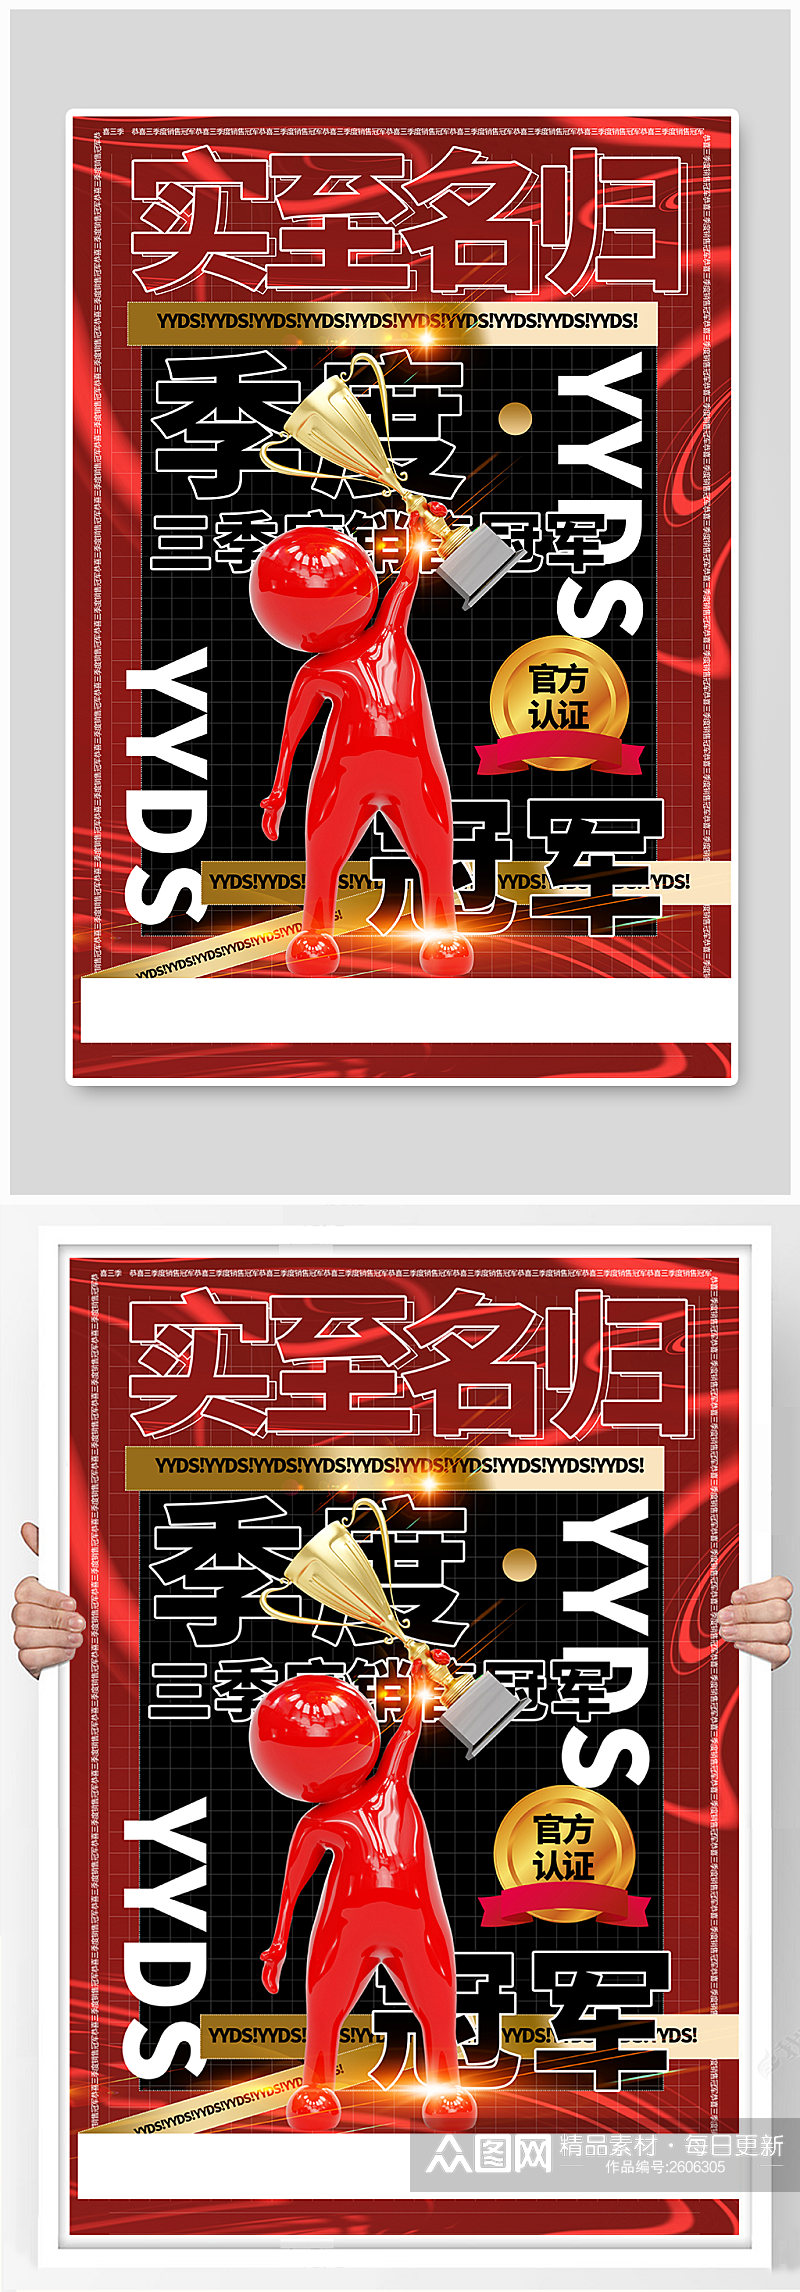 红黑大气酸性立体季度销售冠军企业海报素材